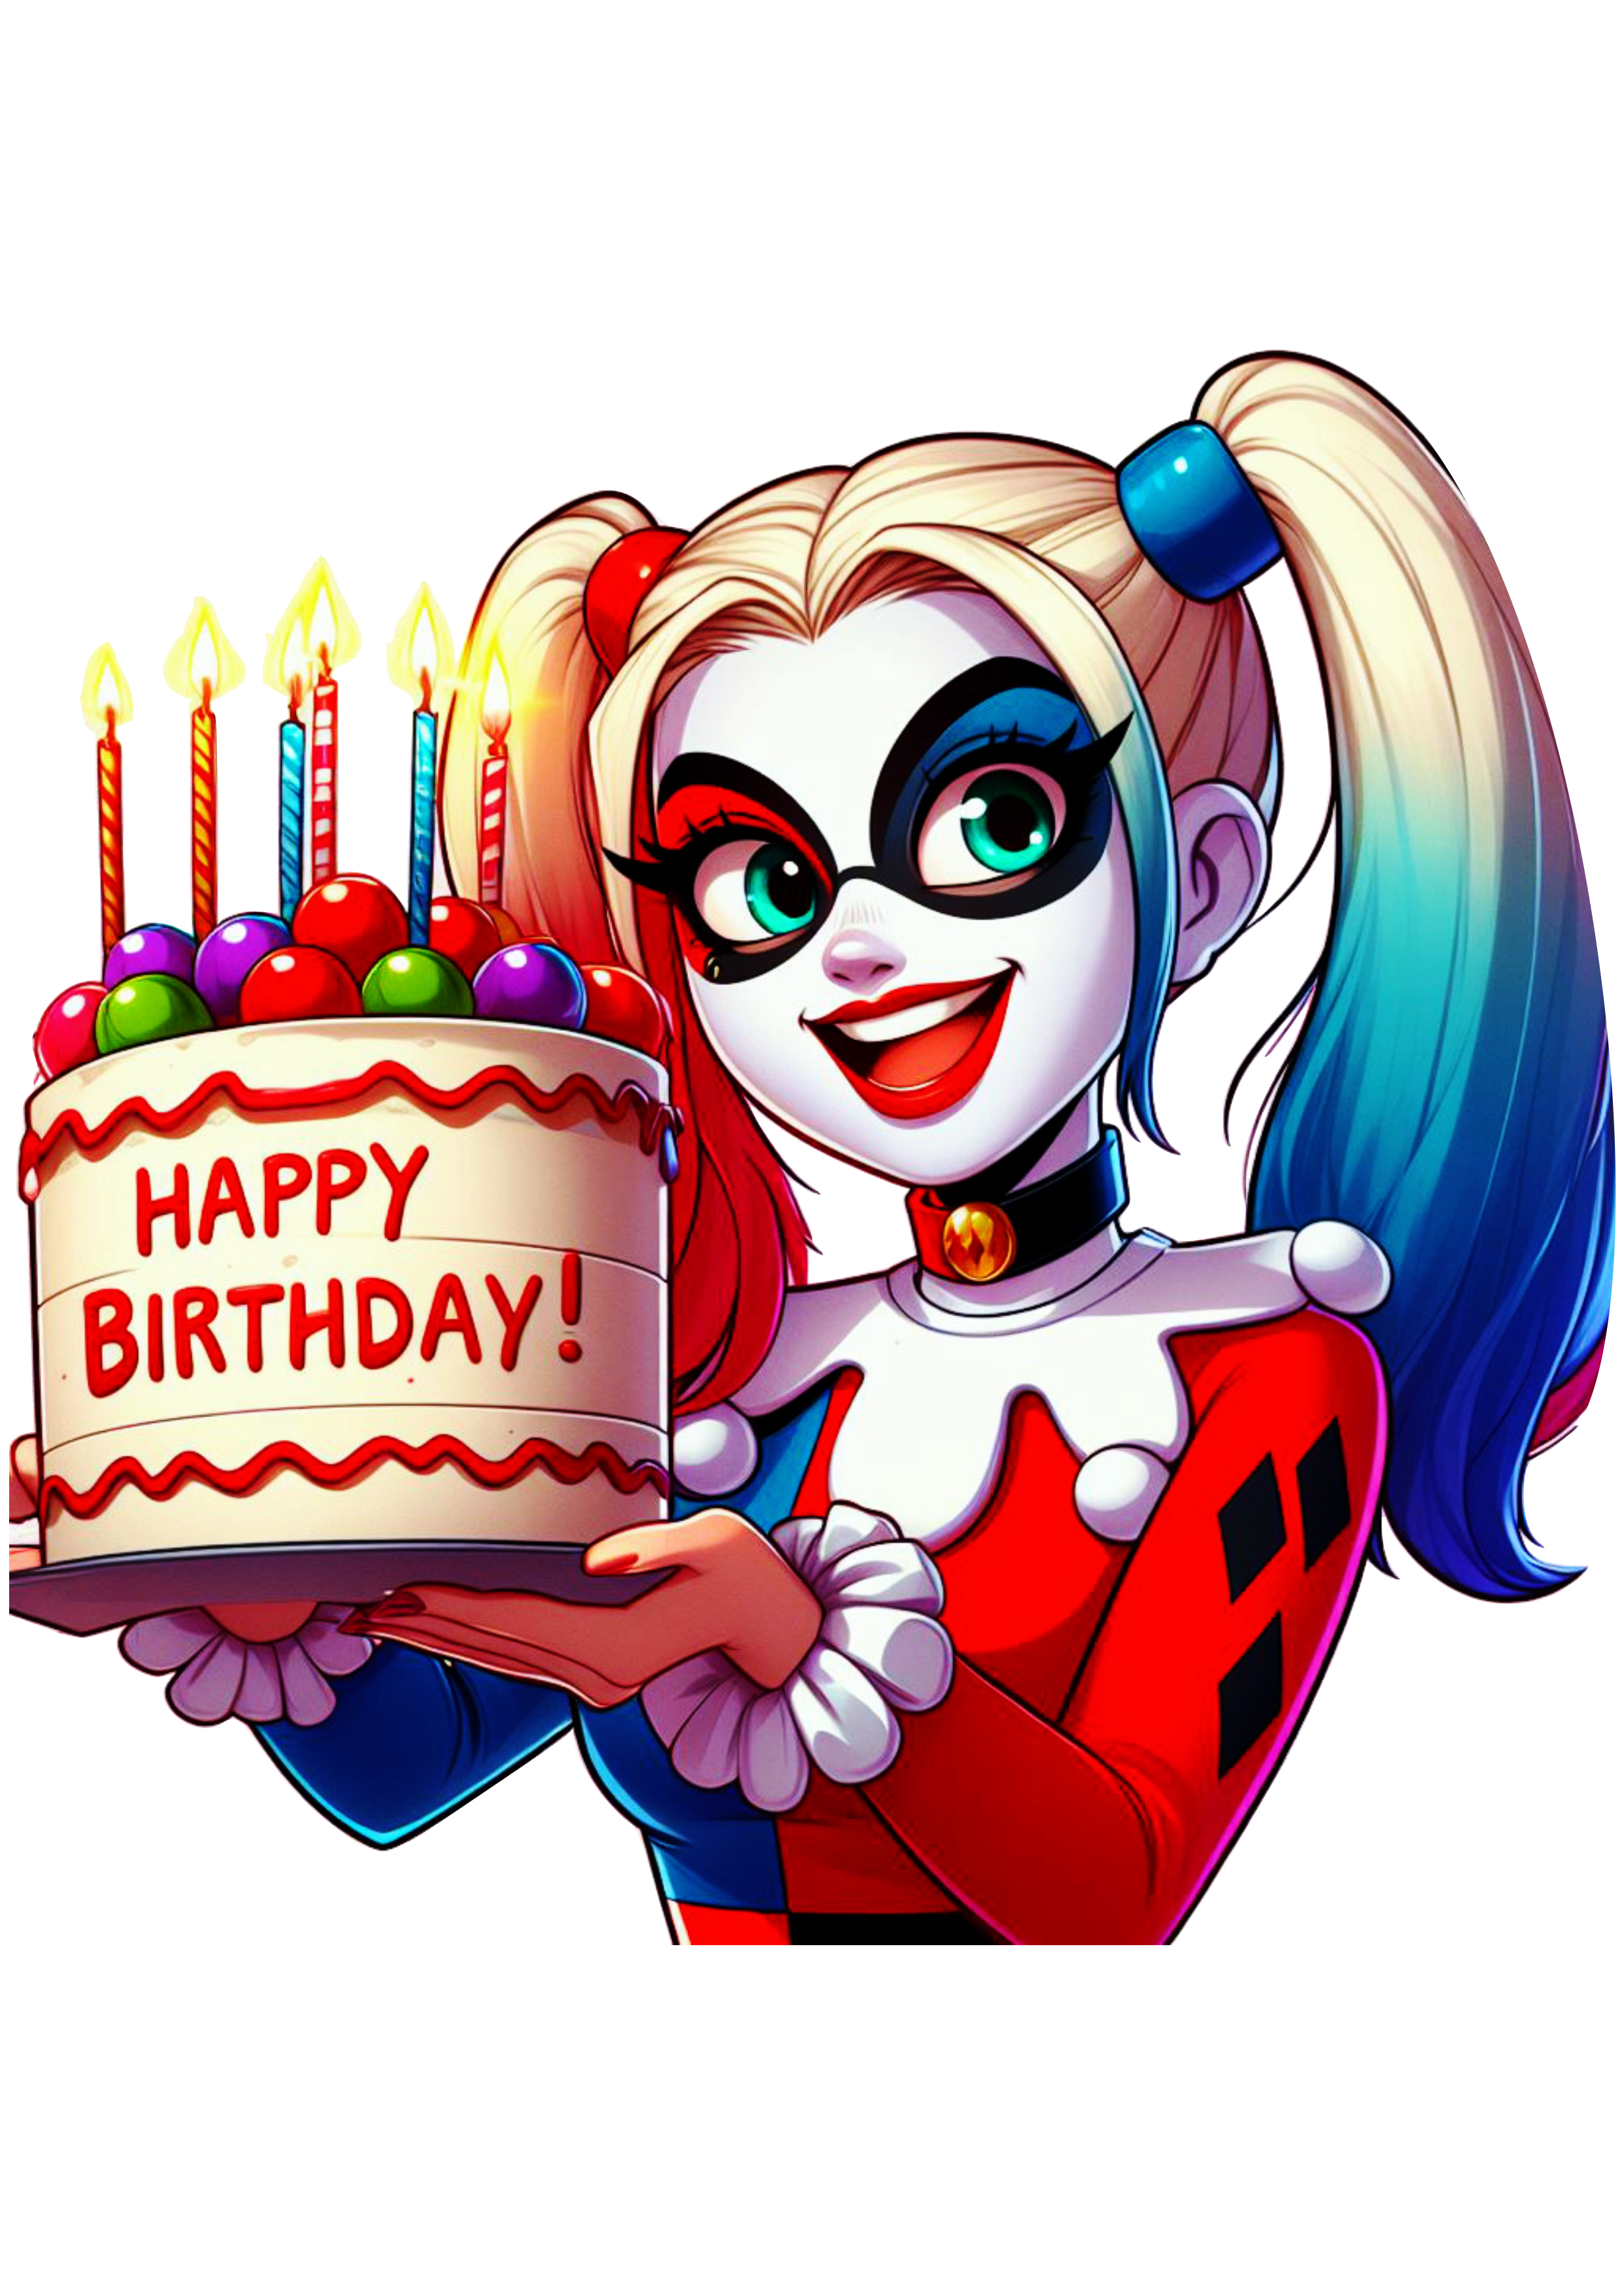 Arlequina Harley Quinn com bolo de aniversário png imagem decoração de festa happy birthday